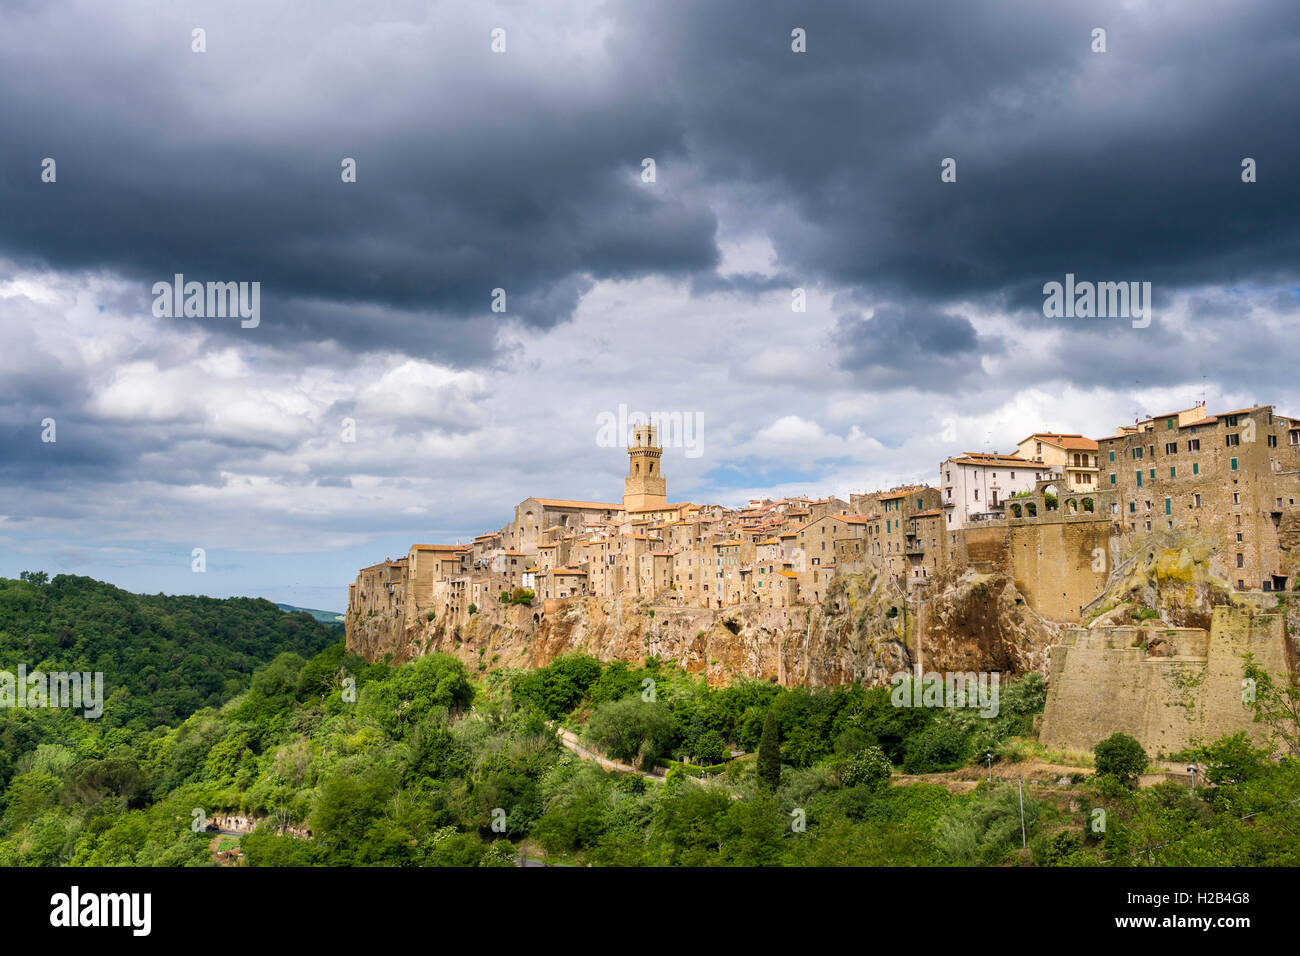 La ciudad sobre la colina y cielo nublado, Pitigliano, Toscana, Italia Foto de stock